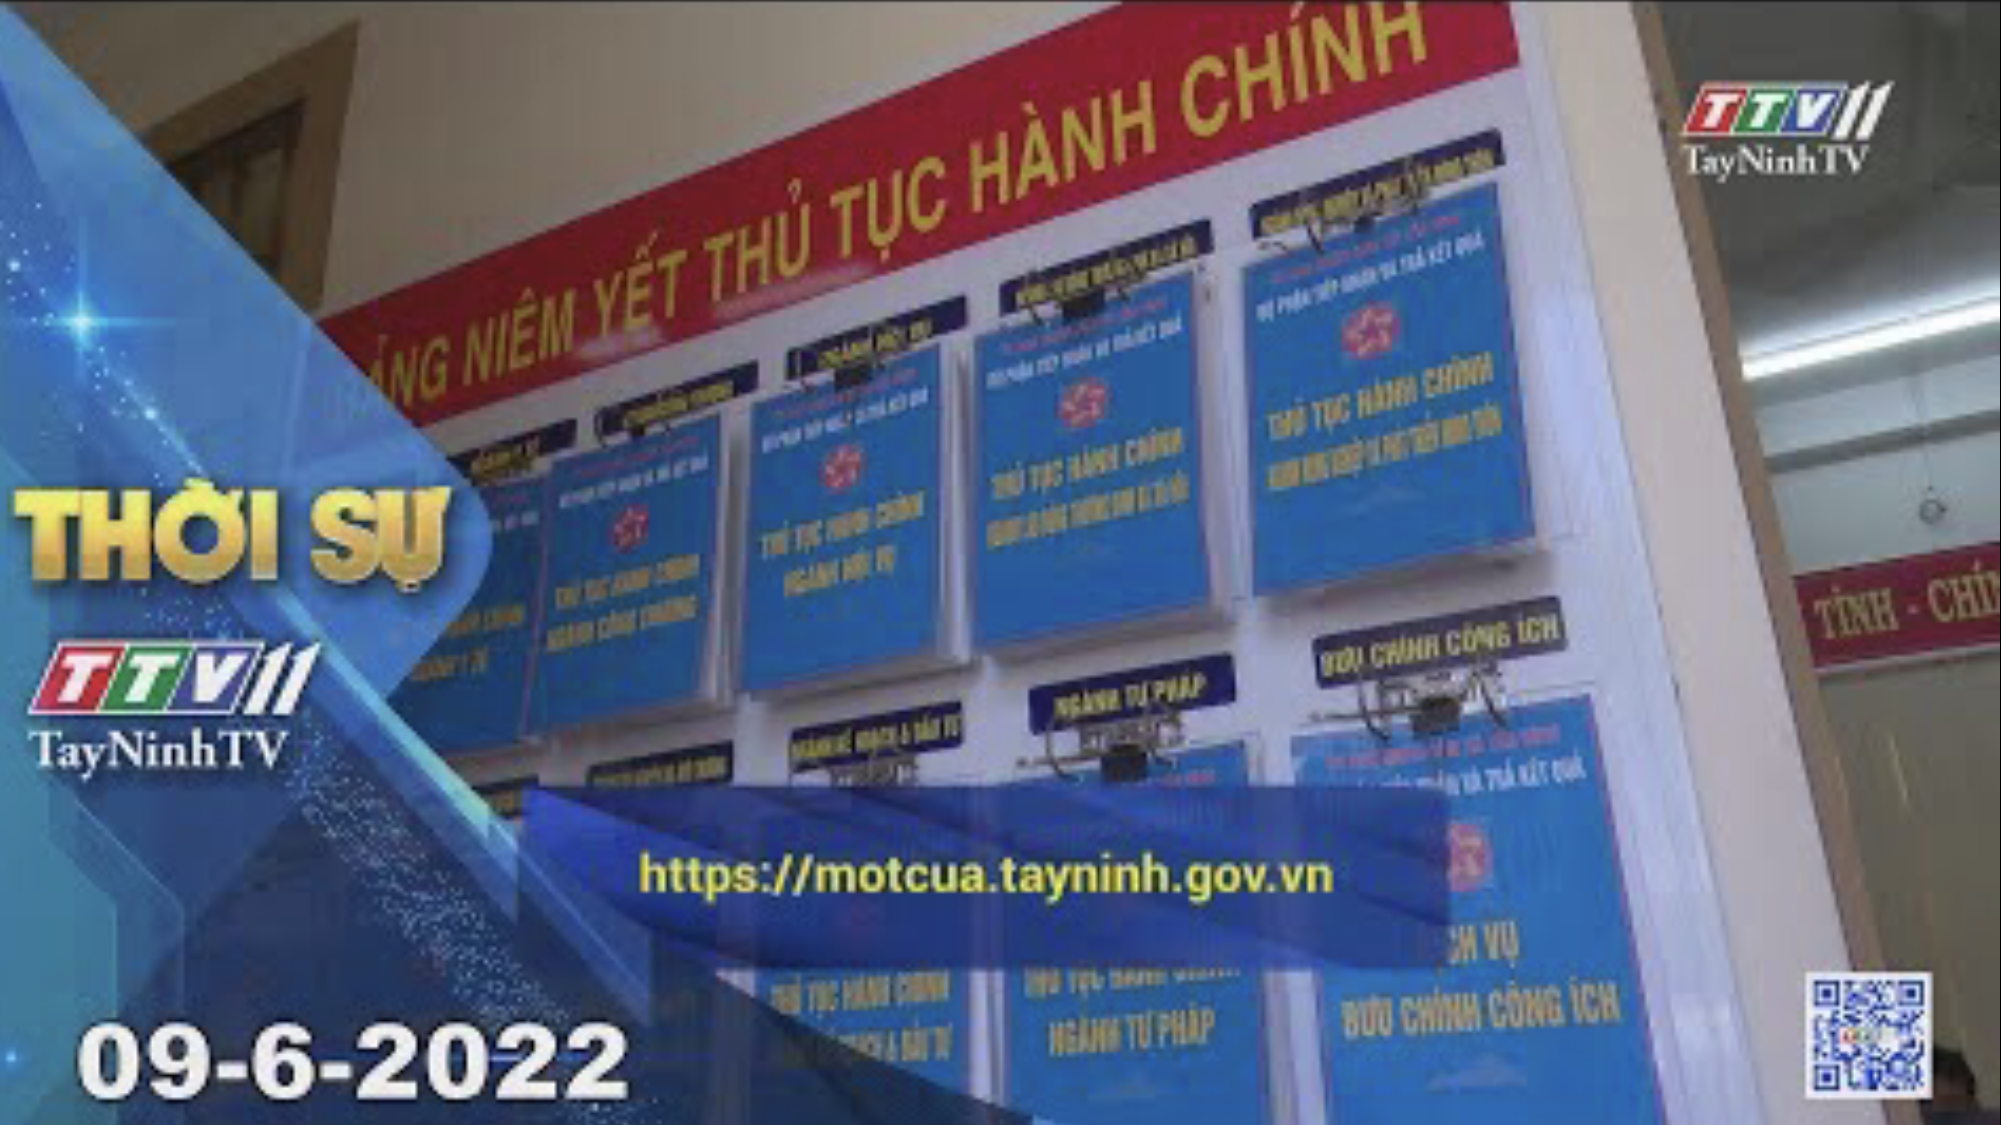 Thời sự Tây Ninh 09-6-2022 | Tin tức hôm nay | TayNinhTV